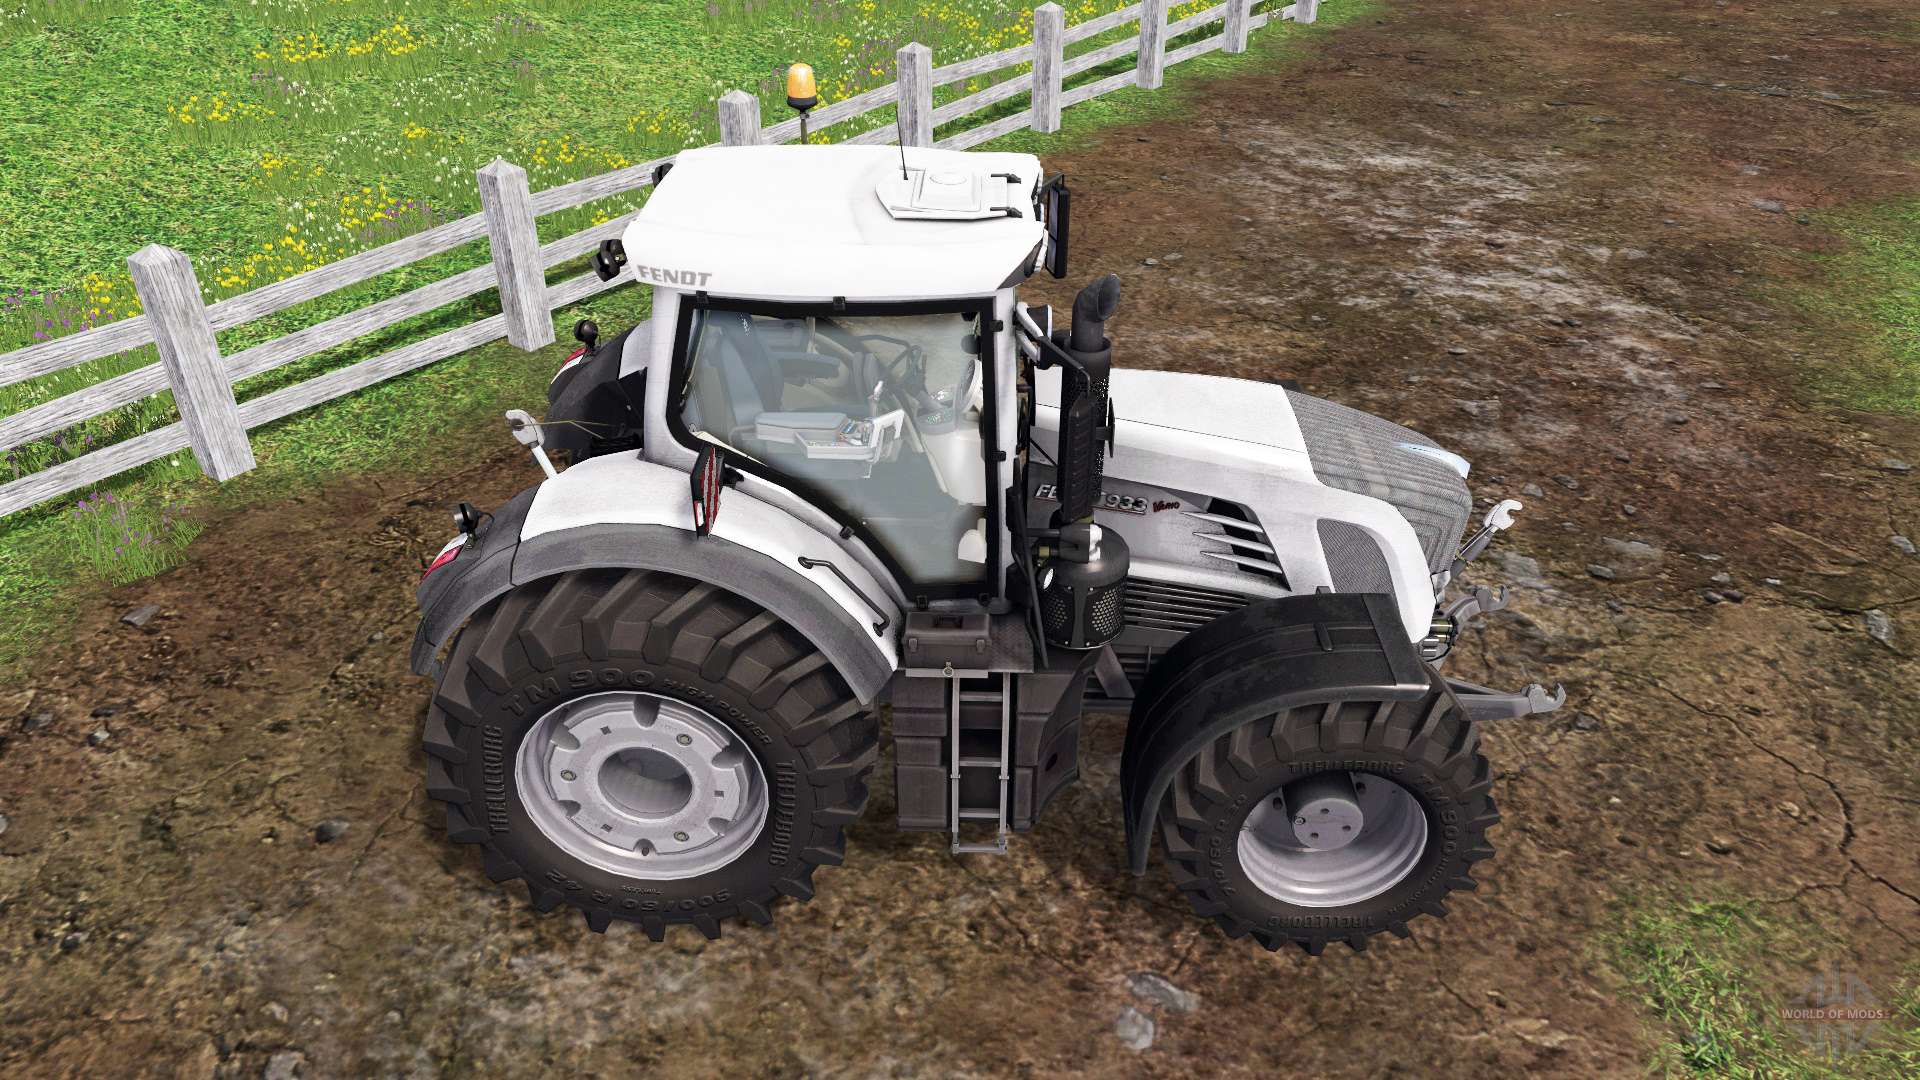 Fendt 933 Vario white for Farming Simulator 2015